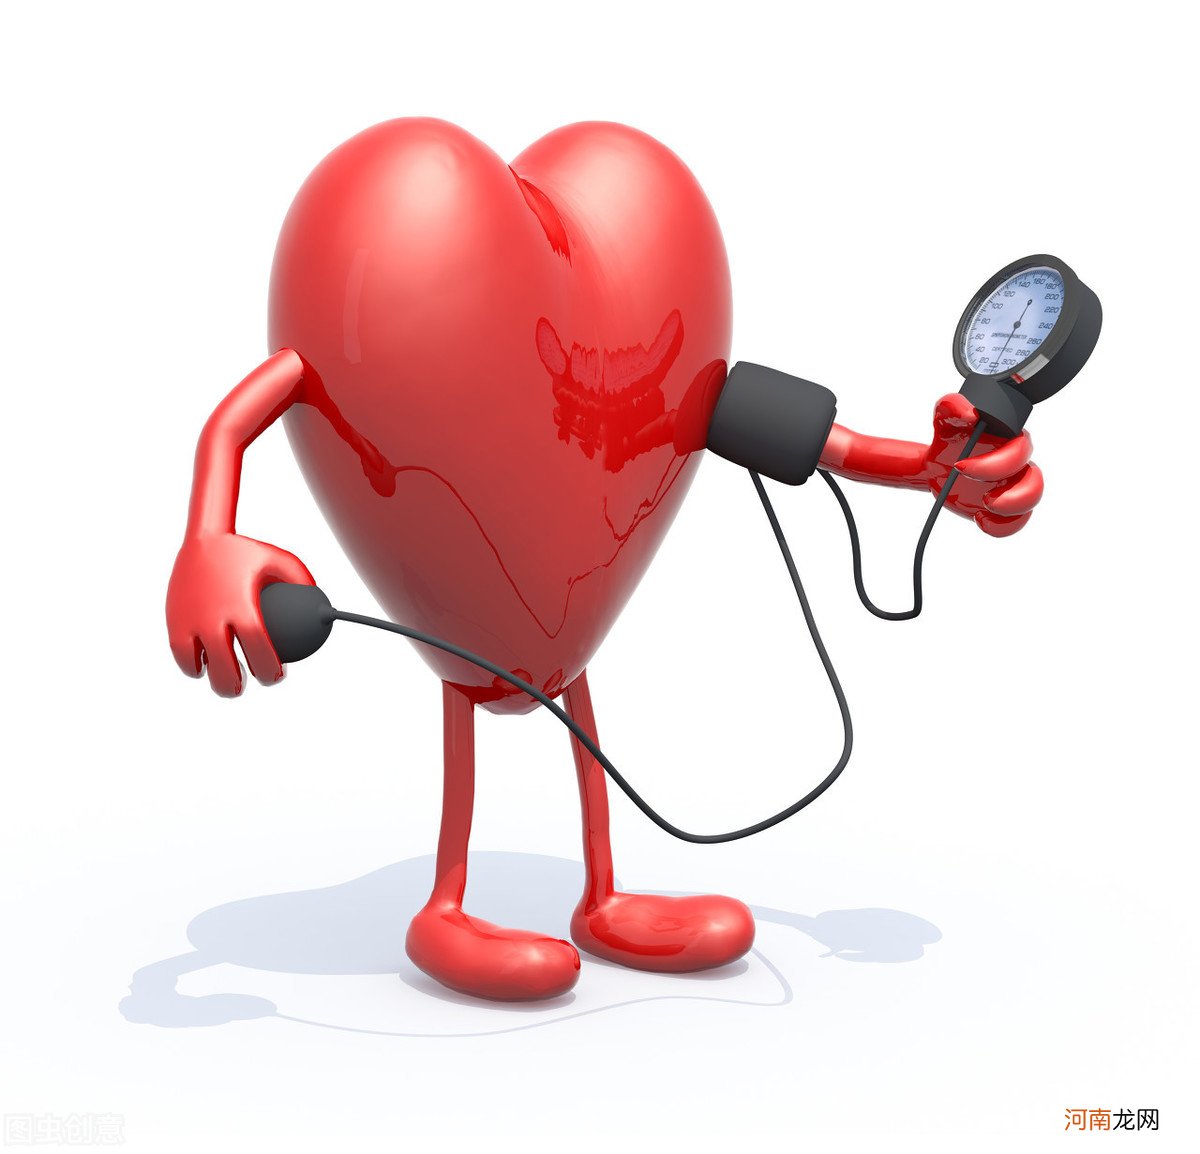 正常血压是多少 血压60-90正常吗